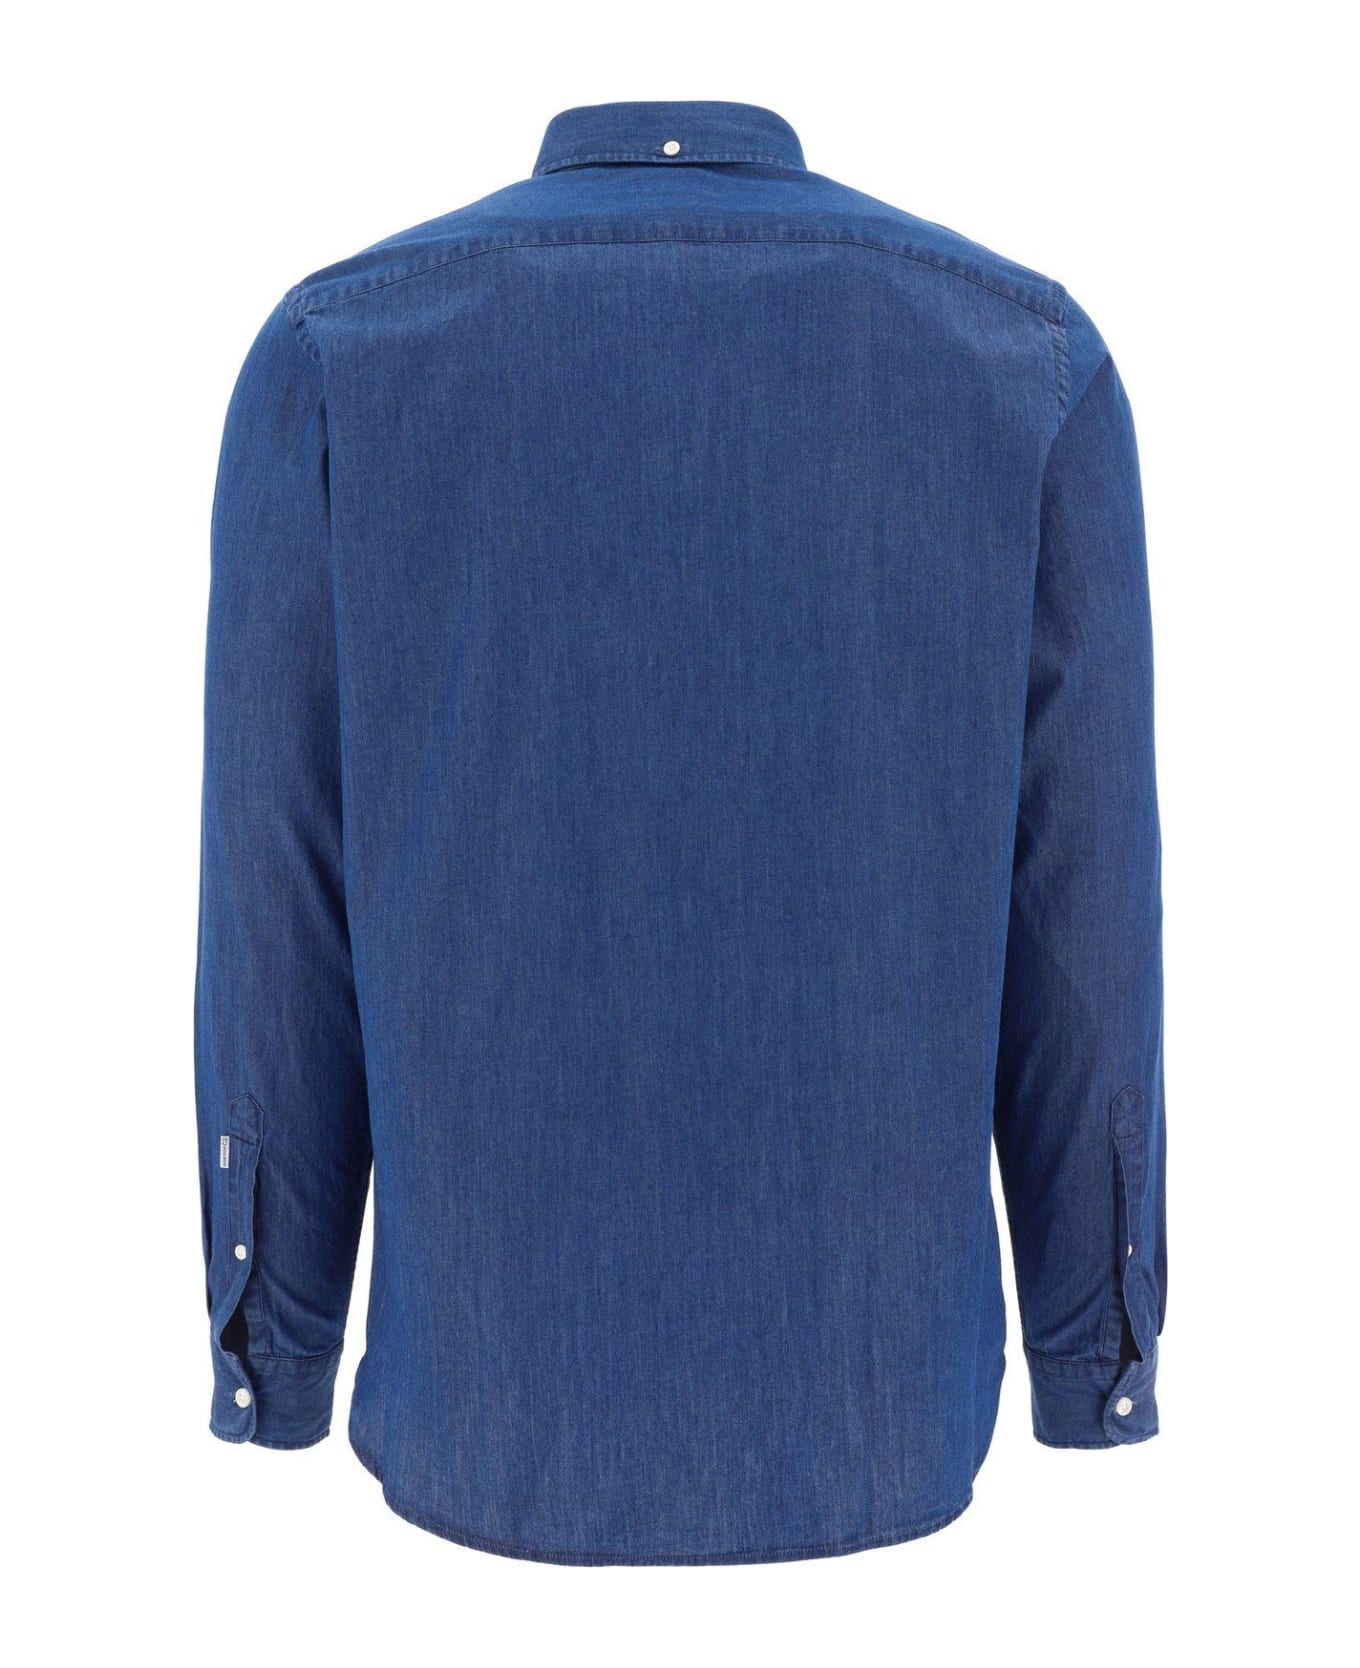 Woolrich Buttoned Long-sleeved Shirt - Light Indigo